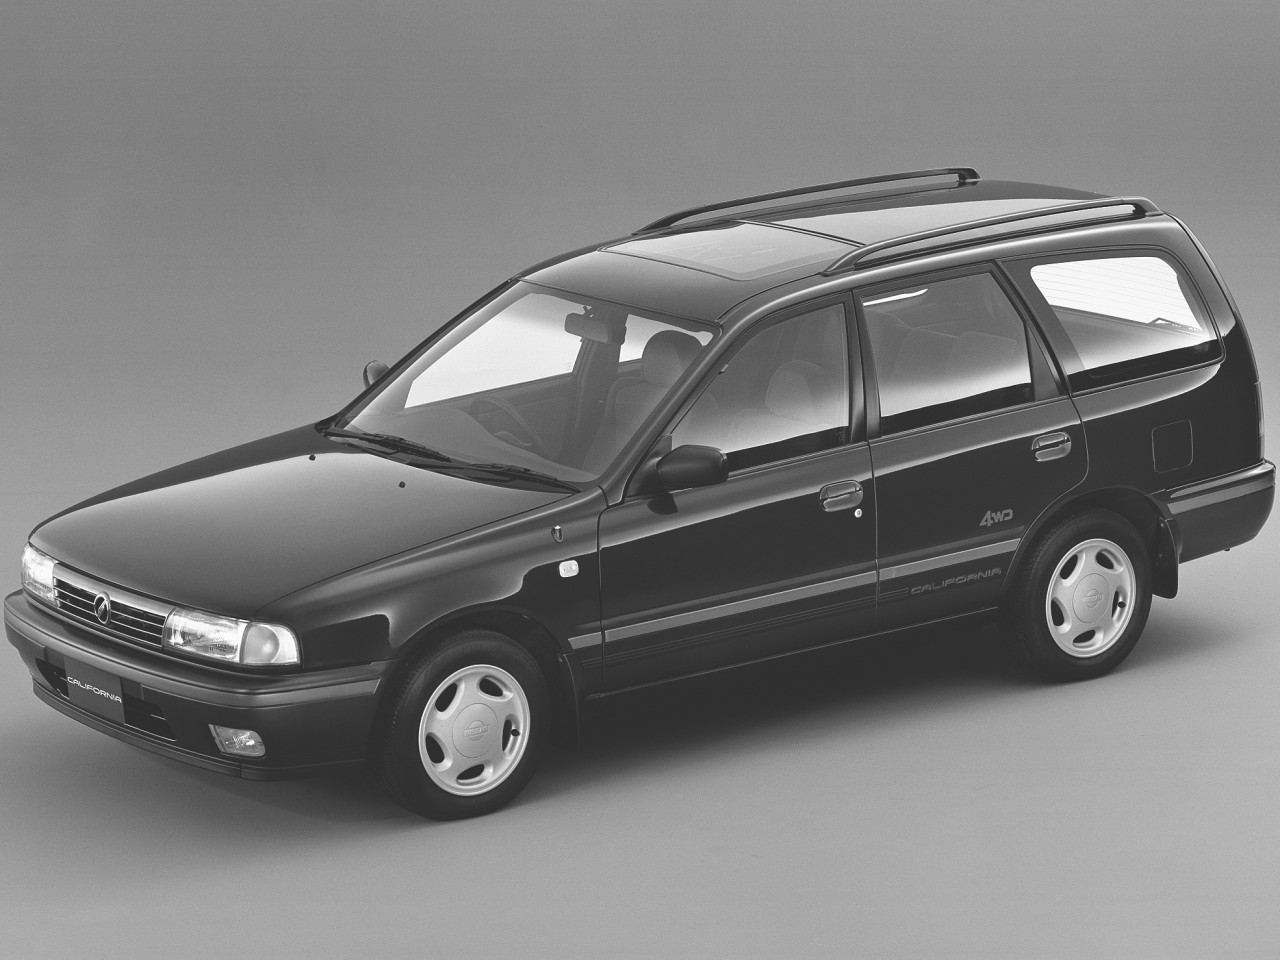 日産 サニー カリフォルニア 1990年モデル 新車画像